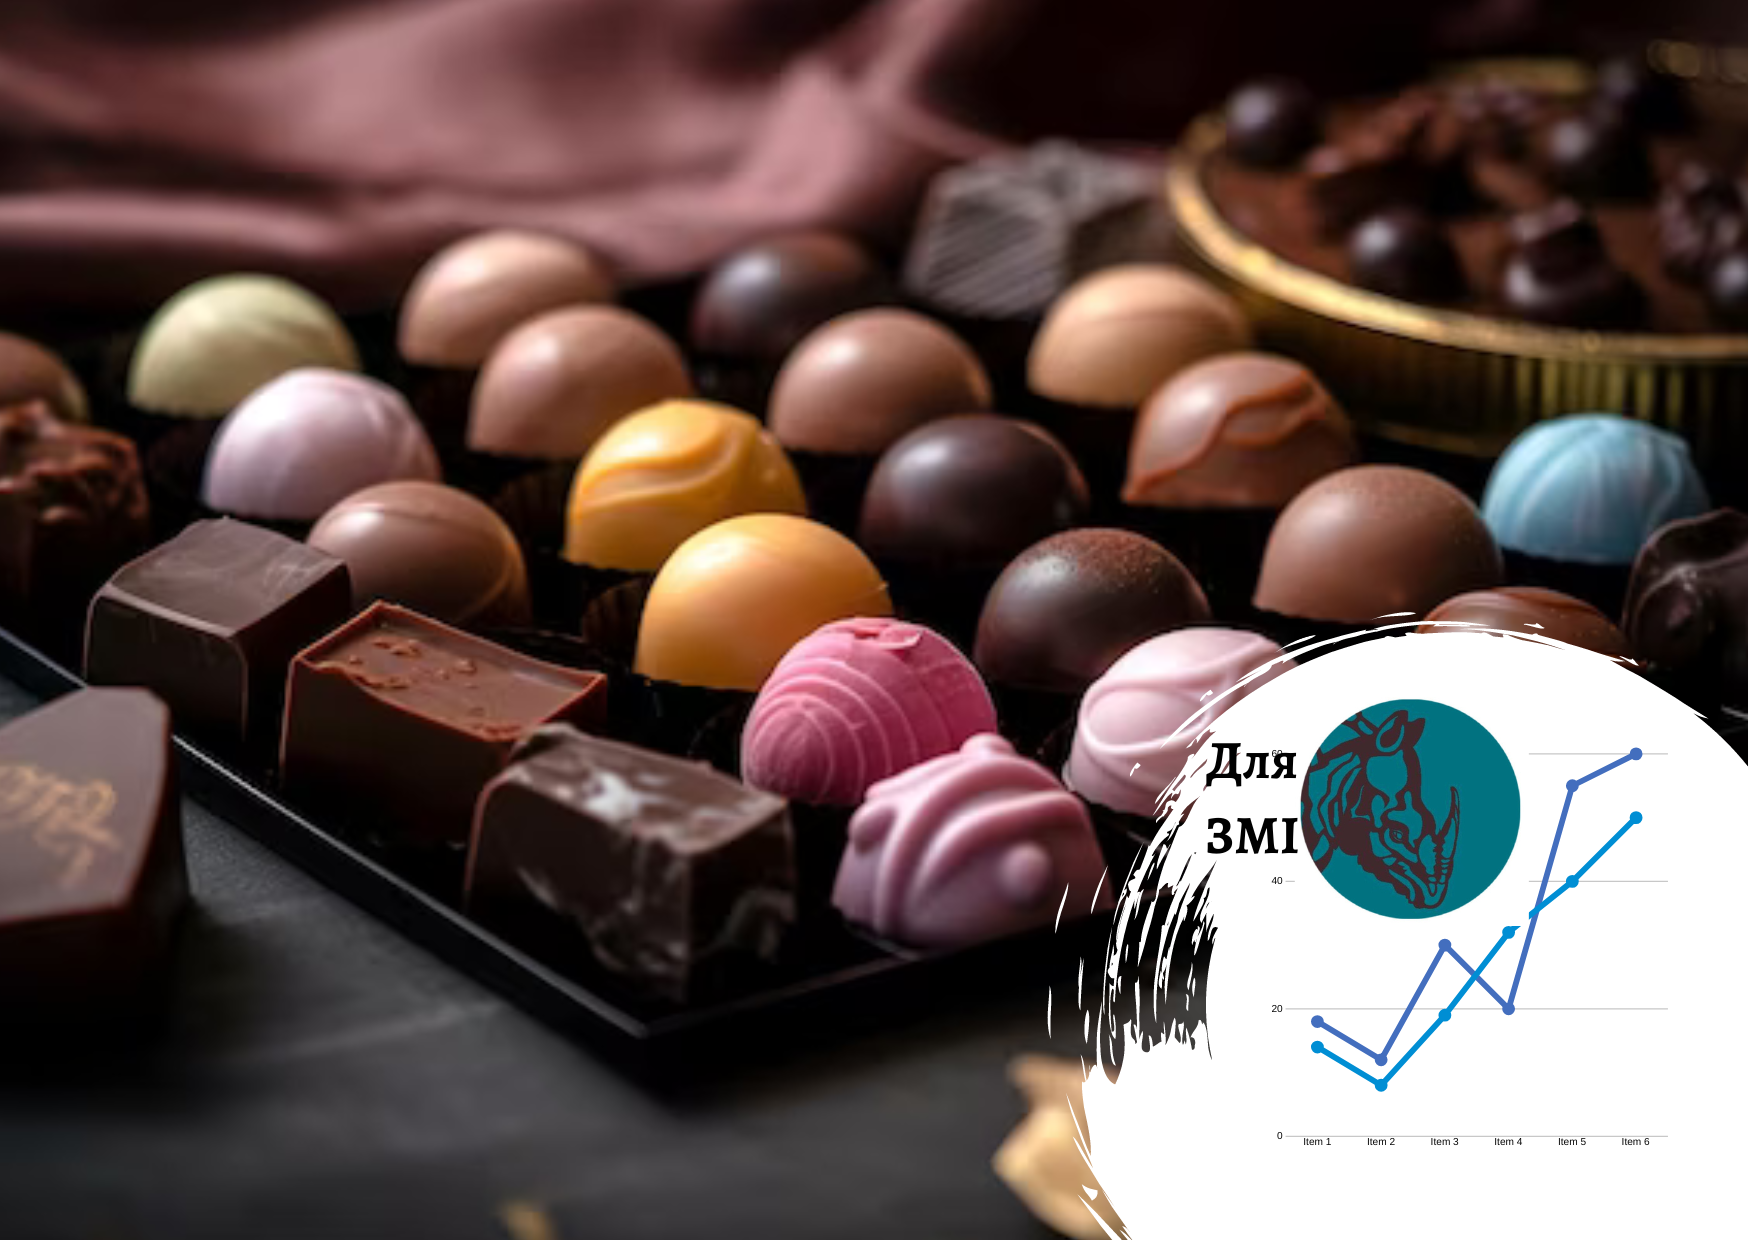 Рынок шоколадных конфет проанализировала компания Pro-Consulting. ПИЩЕВЫЕ ТХНОЛОГИИ